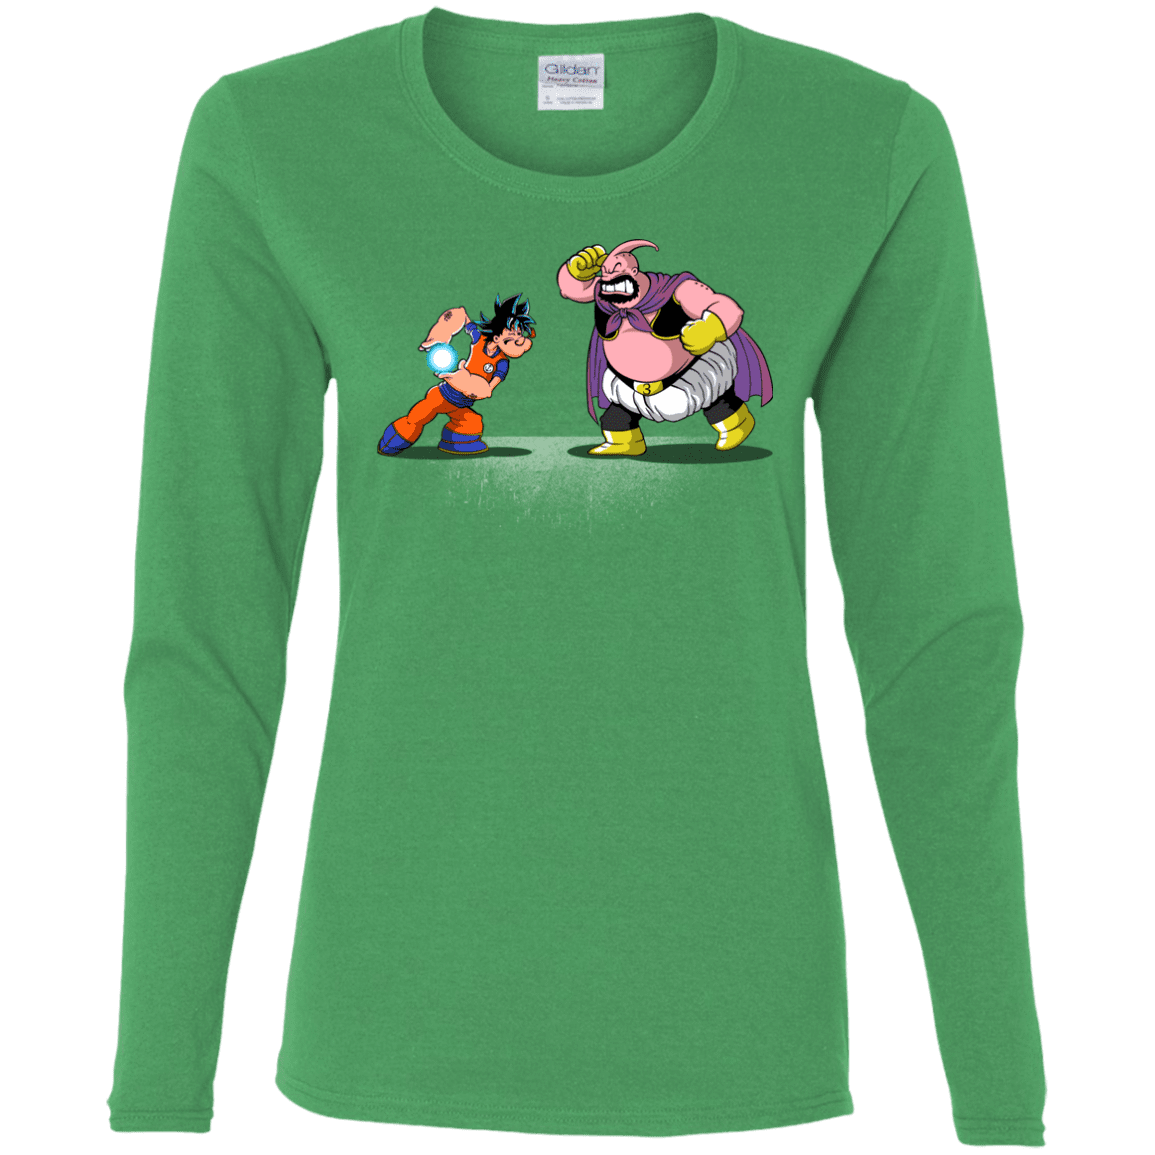 T-Shirts Irish Green / S Blow Me Down Women's Long Sleeve T-Shirt